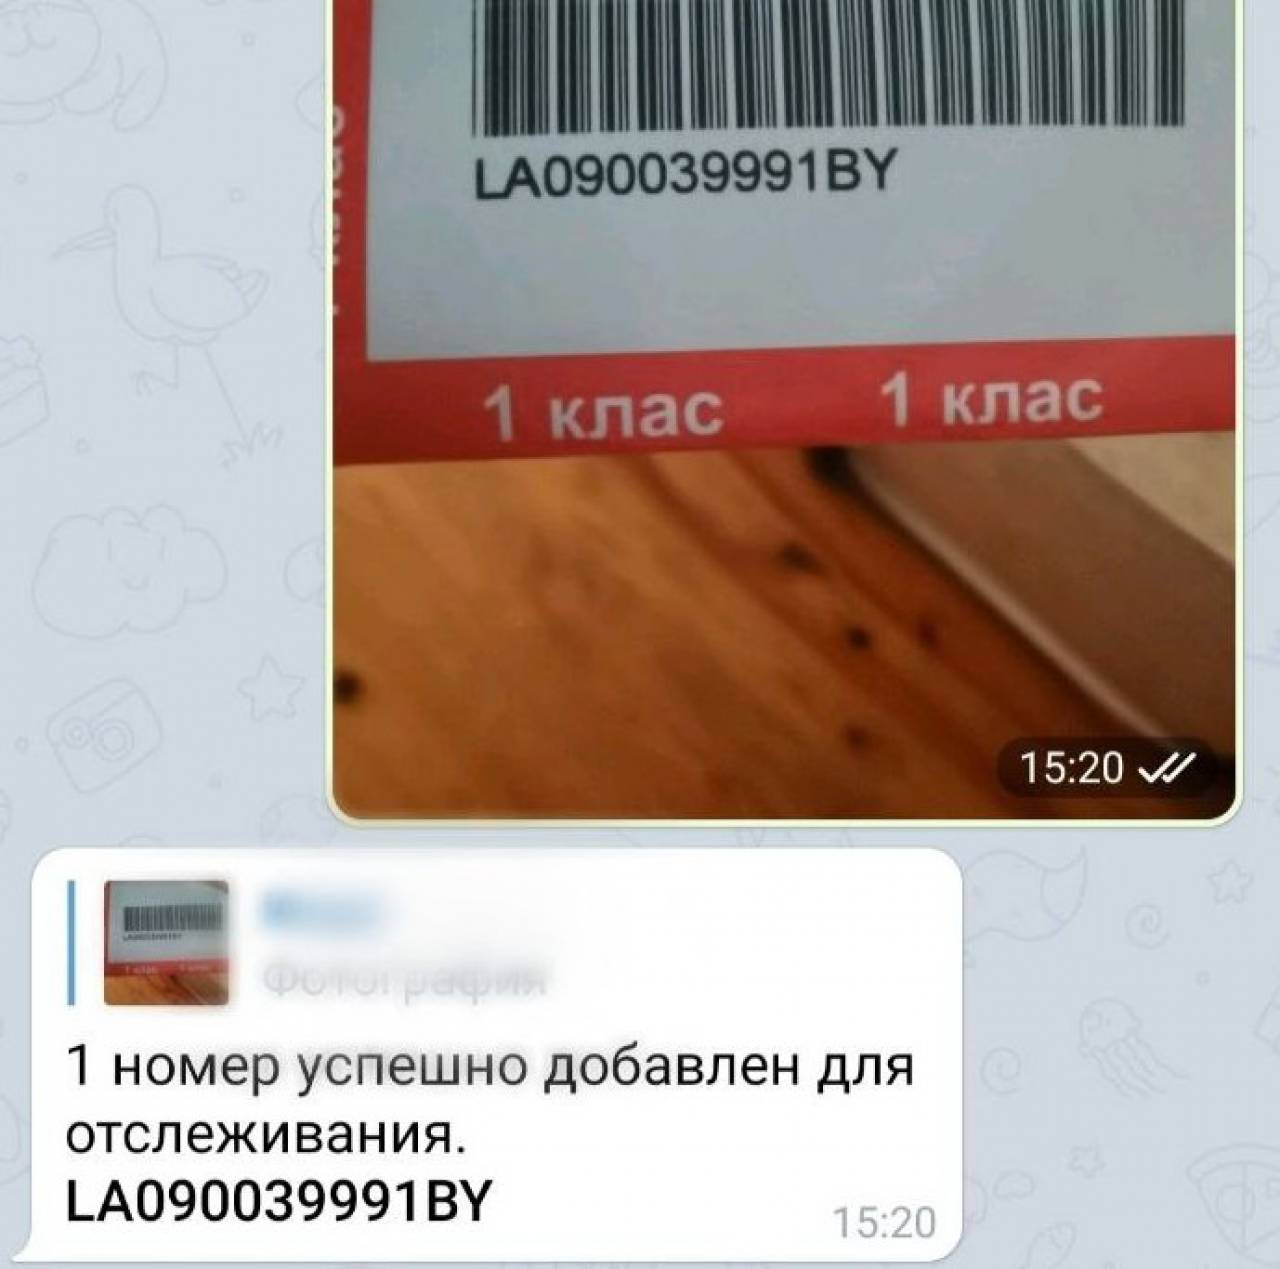 Белорусы разработали очень полезный телеграм-бот для отслеживания посылок: смотрите, как он работает